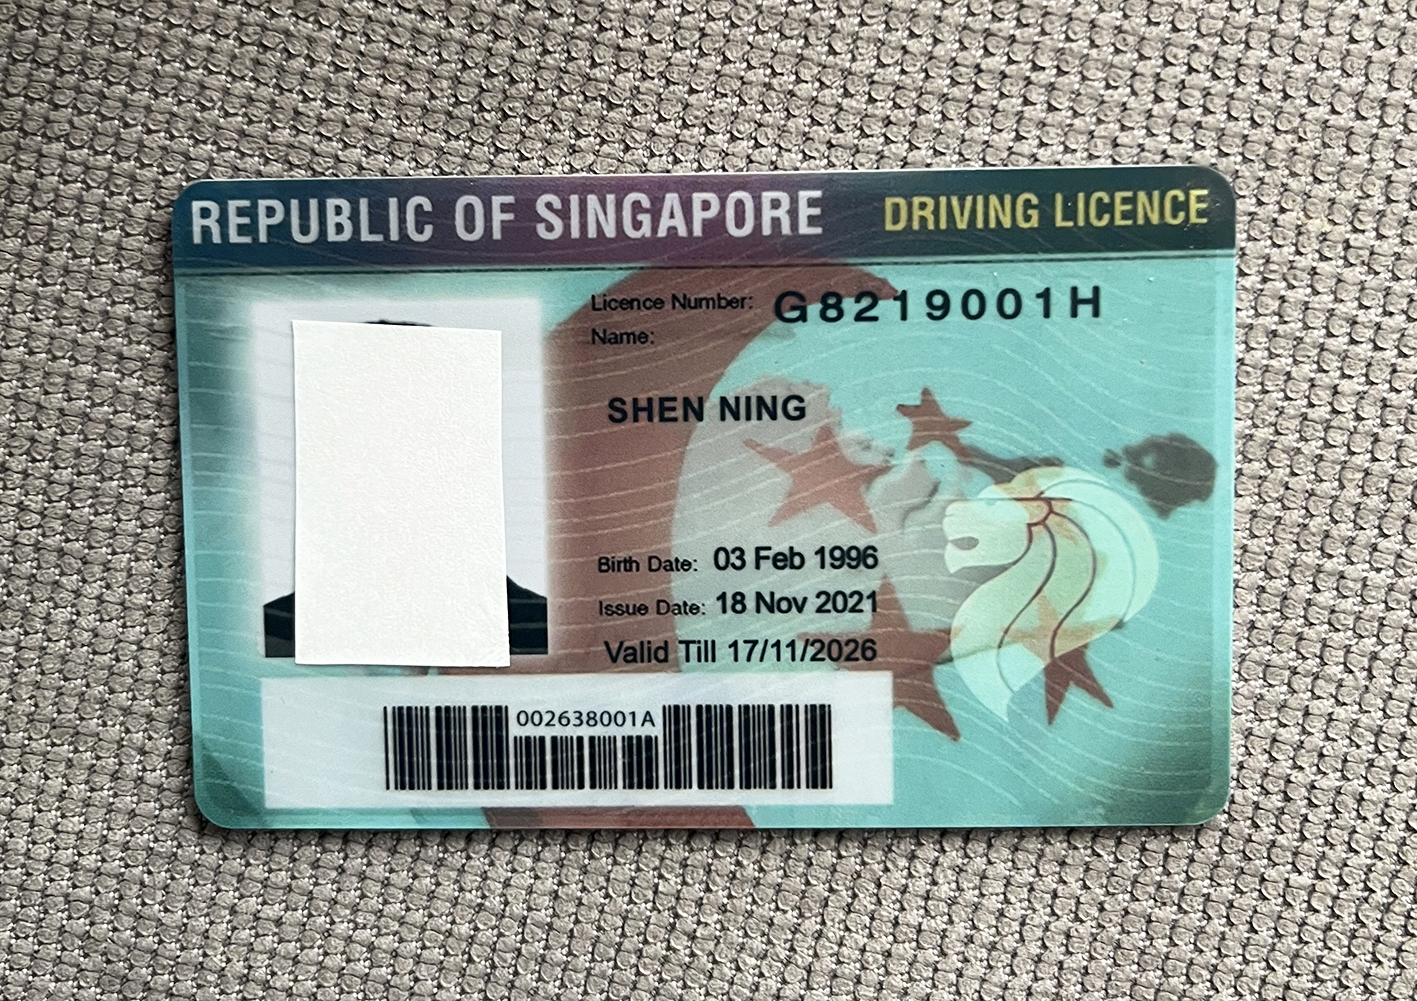 新加坡驾驶证.jpg 新加坡驾驶证正反面图片 亚洲